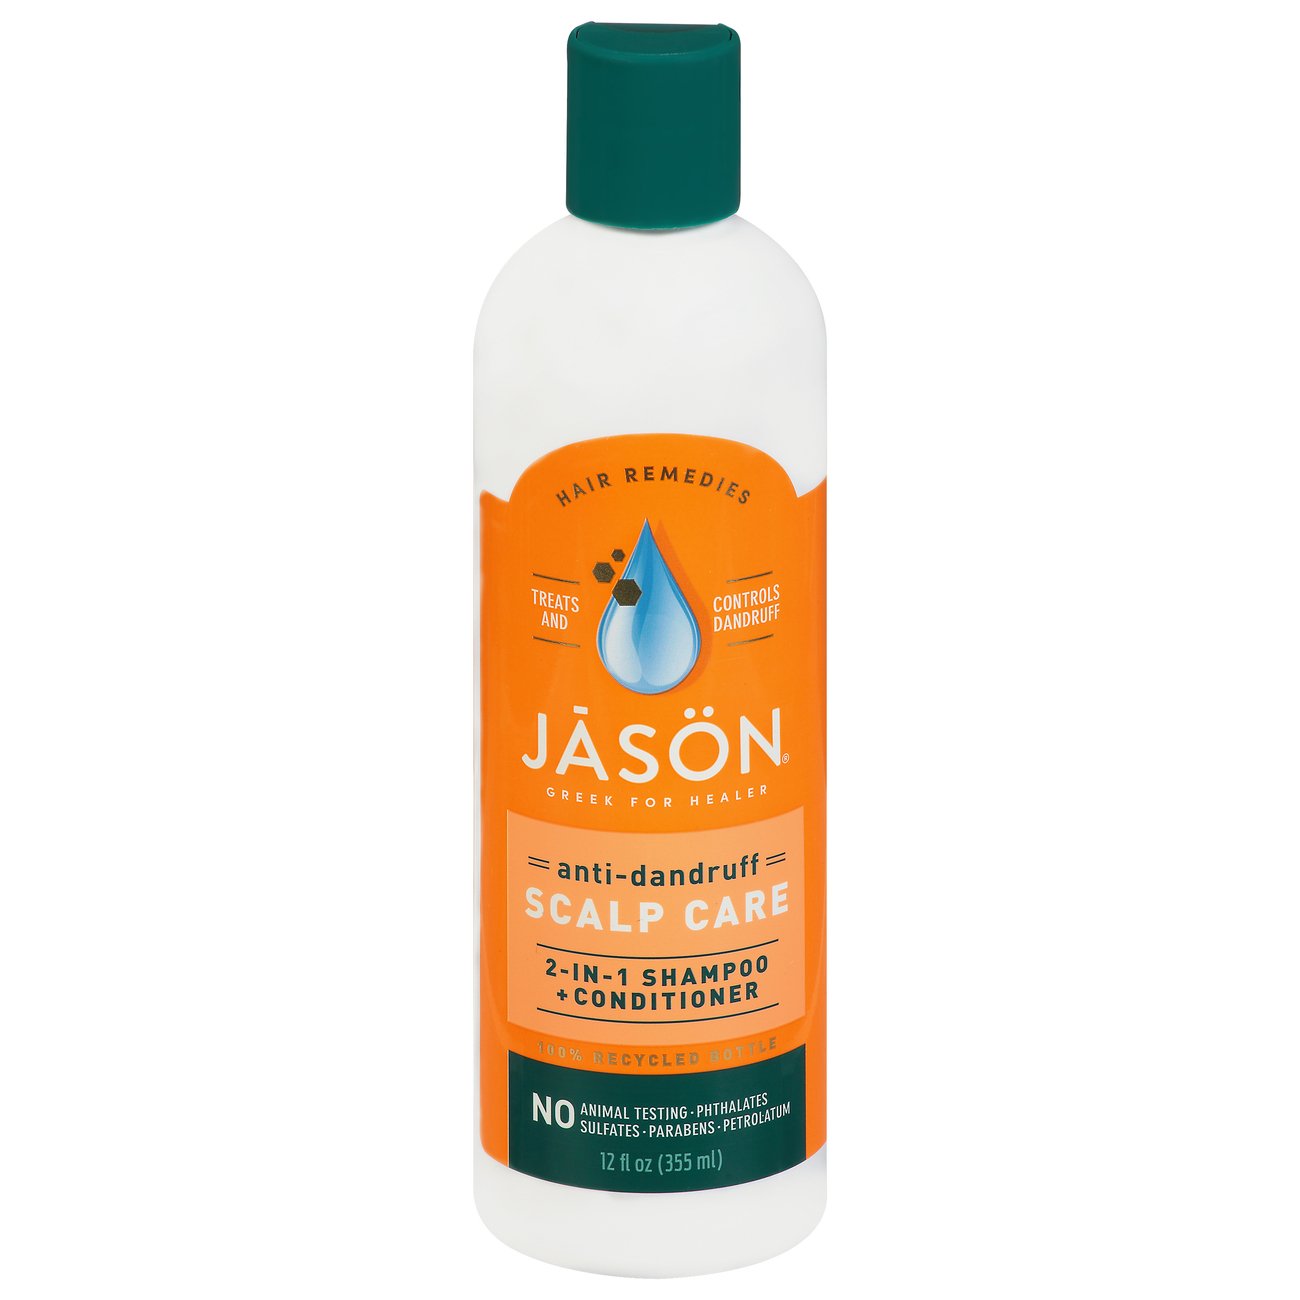 Jason Dandruff Relief 2 in 1 Treatment Shampoo + Conditioner - Shop